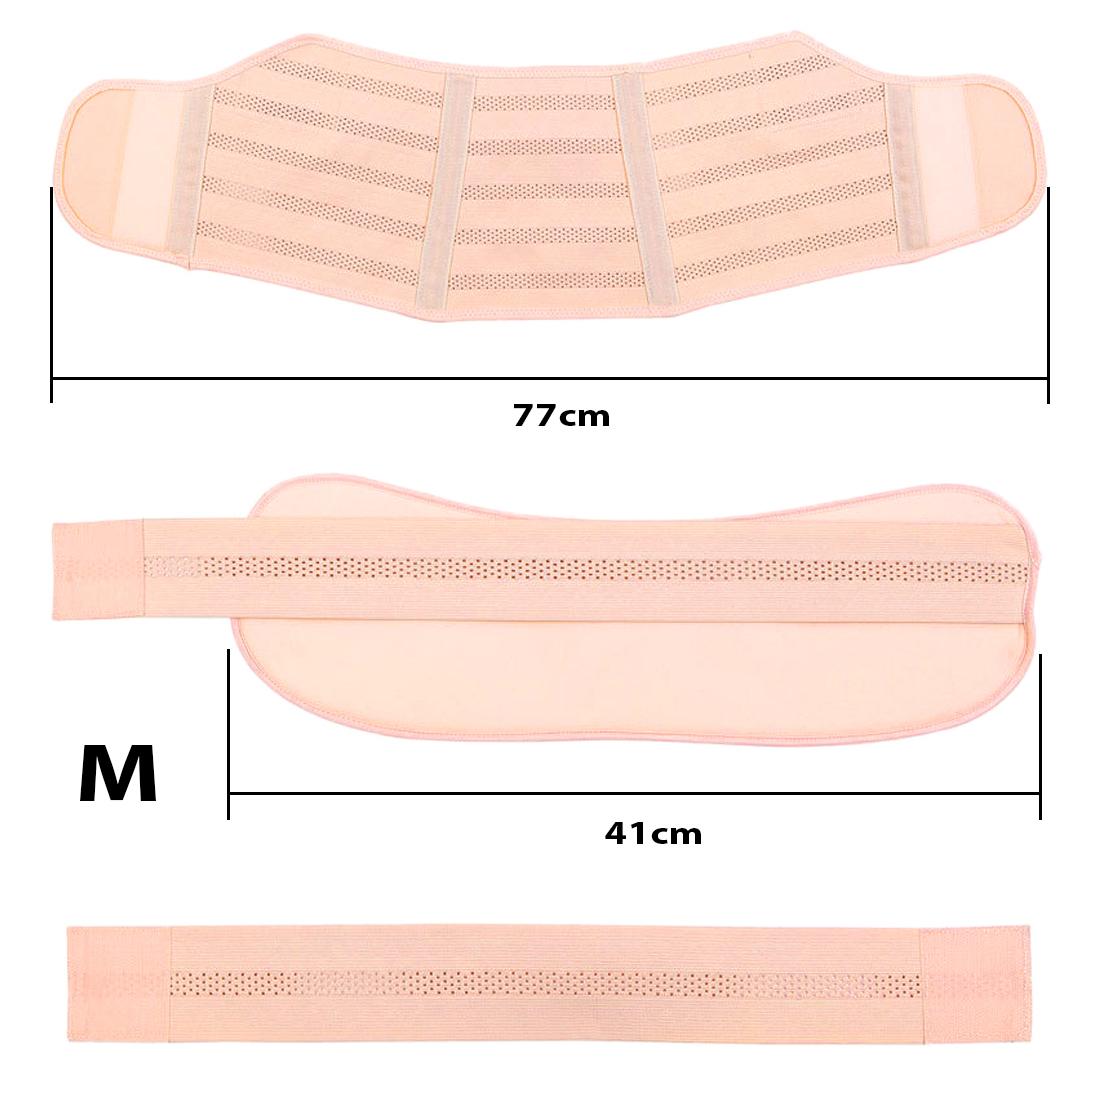 Фото 1 Бандаж для беременных M эластичный пояс на липучках UFT Bandage